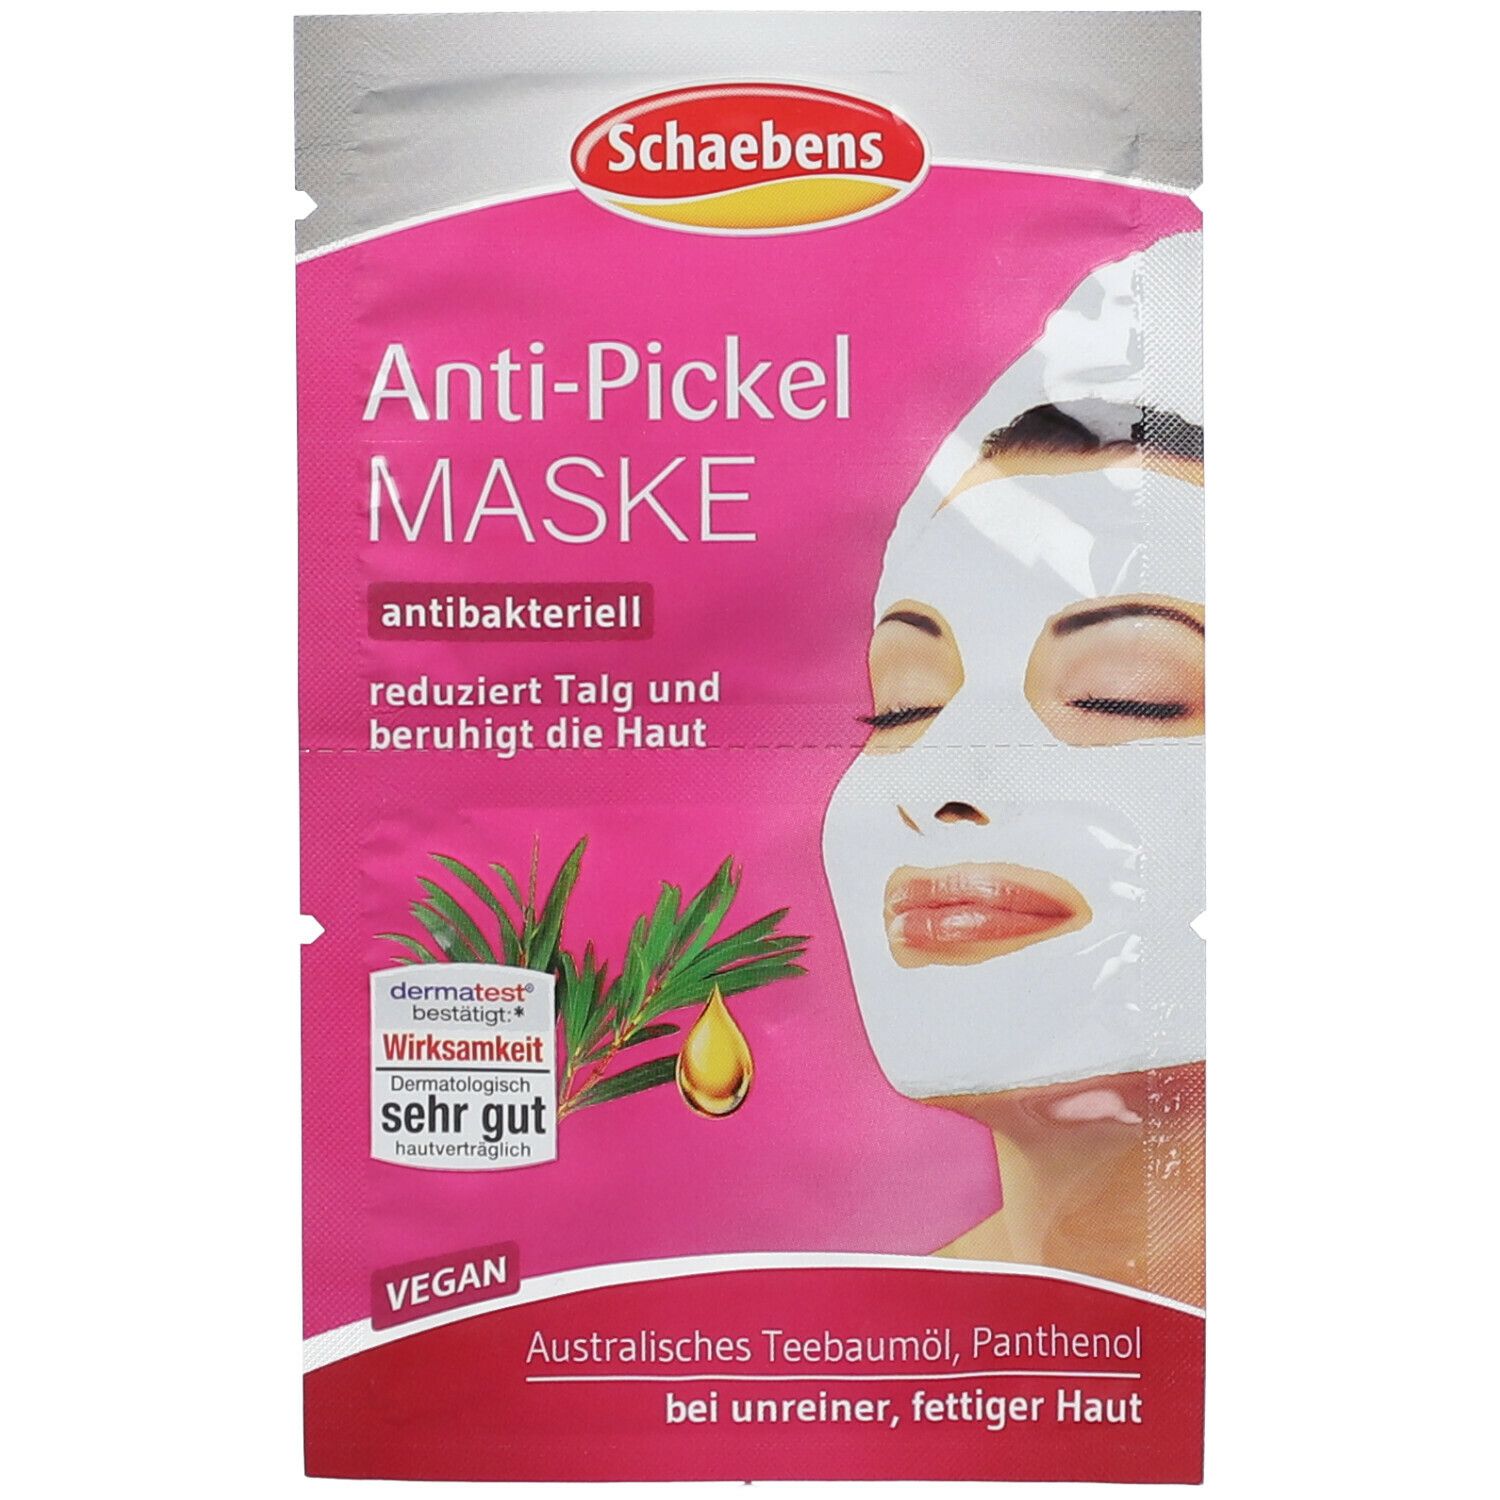 Schaebens Anti-Pickel Maske antibakteriell